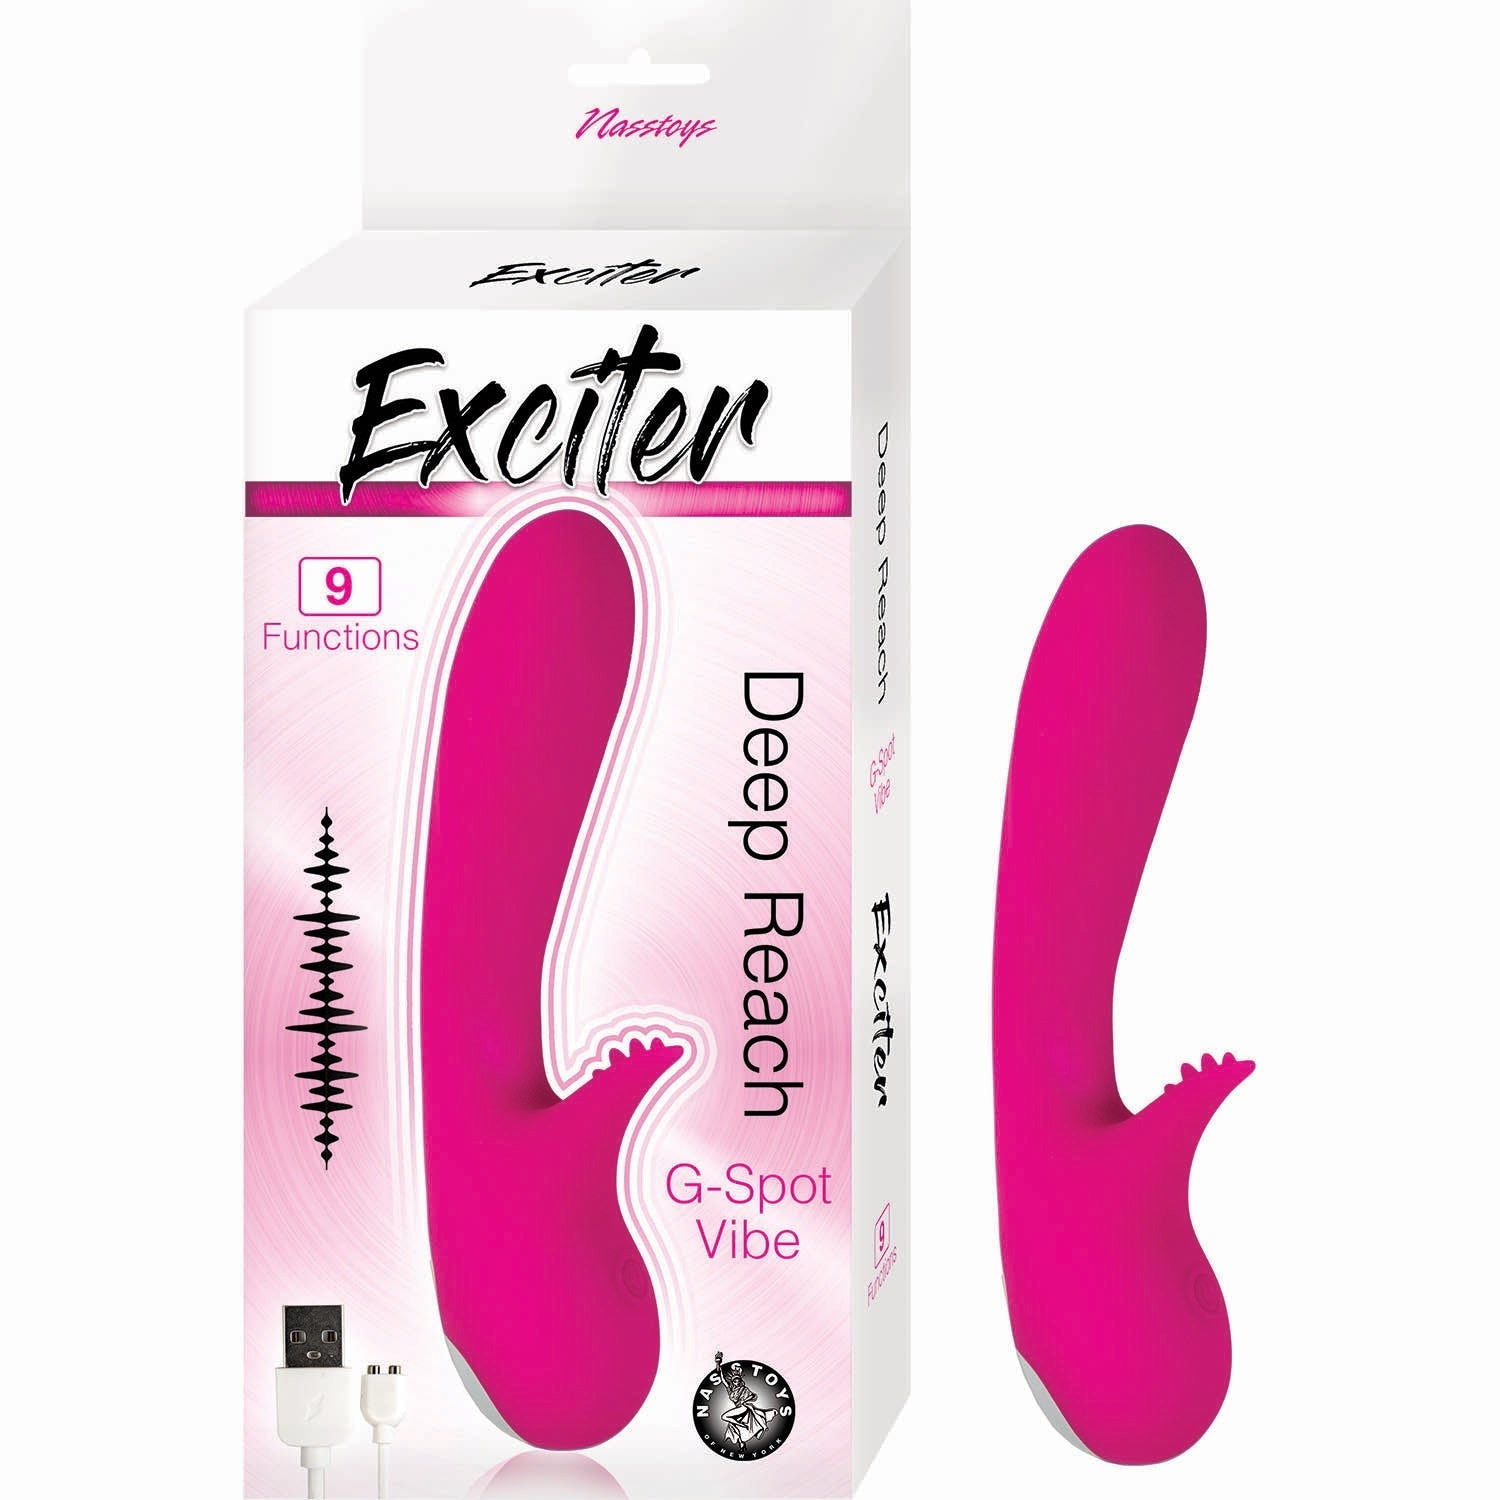 Exciter Deep Reach G-Spot Vibrator - Pink